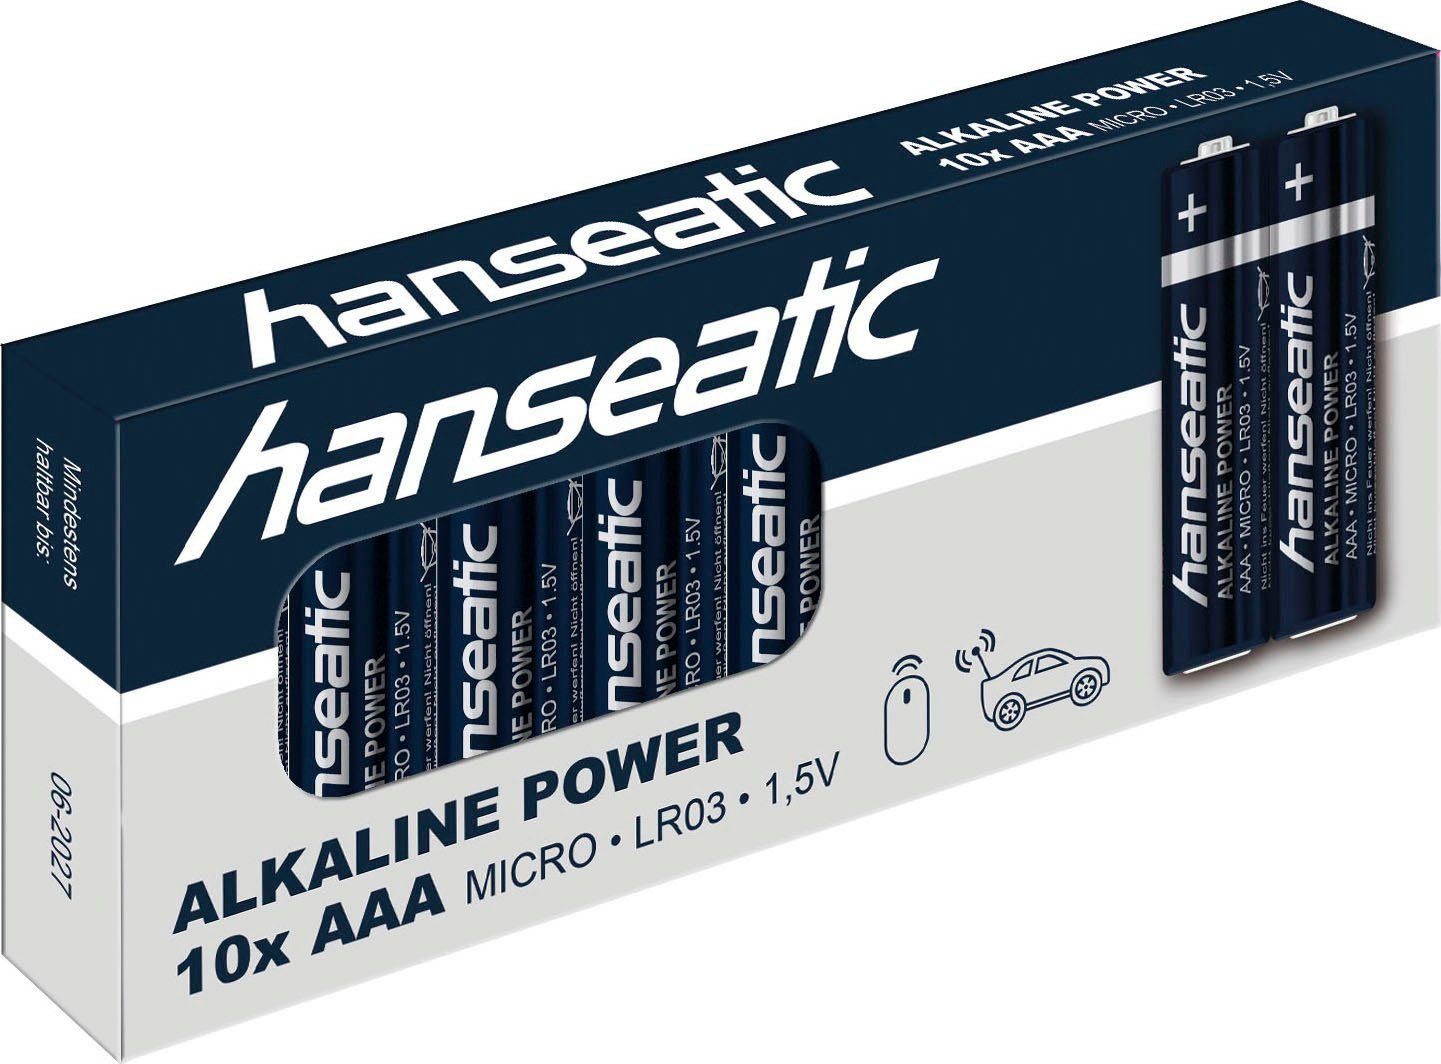 Hanseatic Batterie Set 60 Stück 40 + Batterie